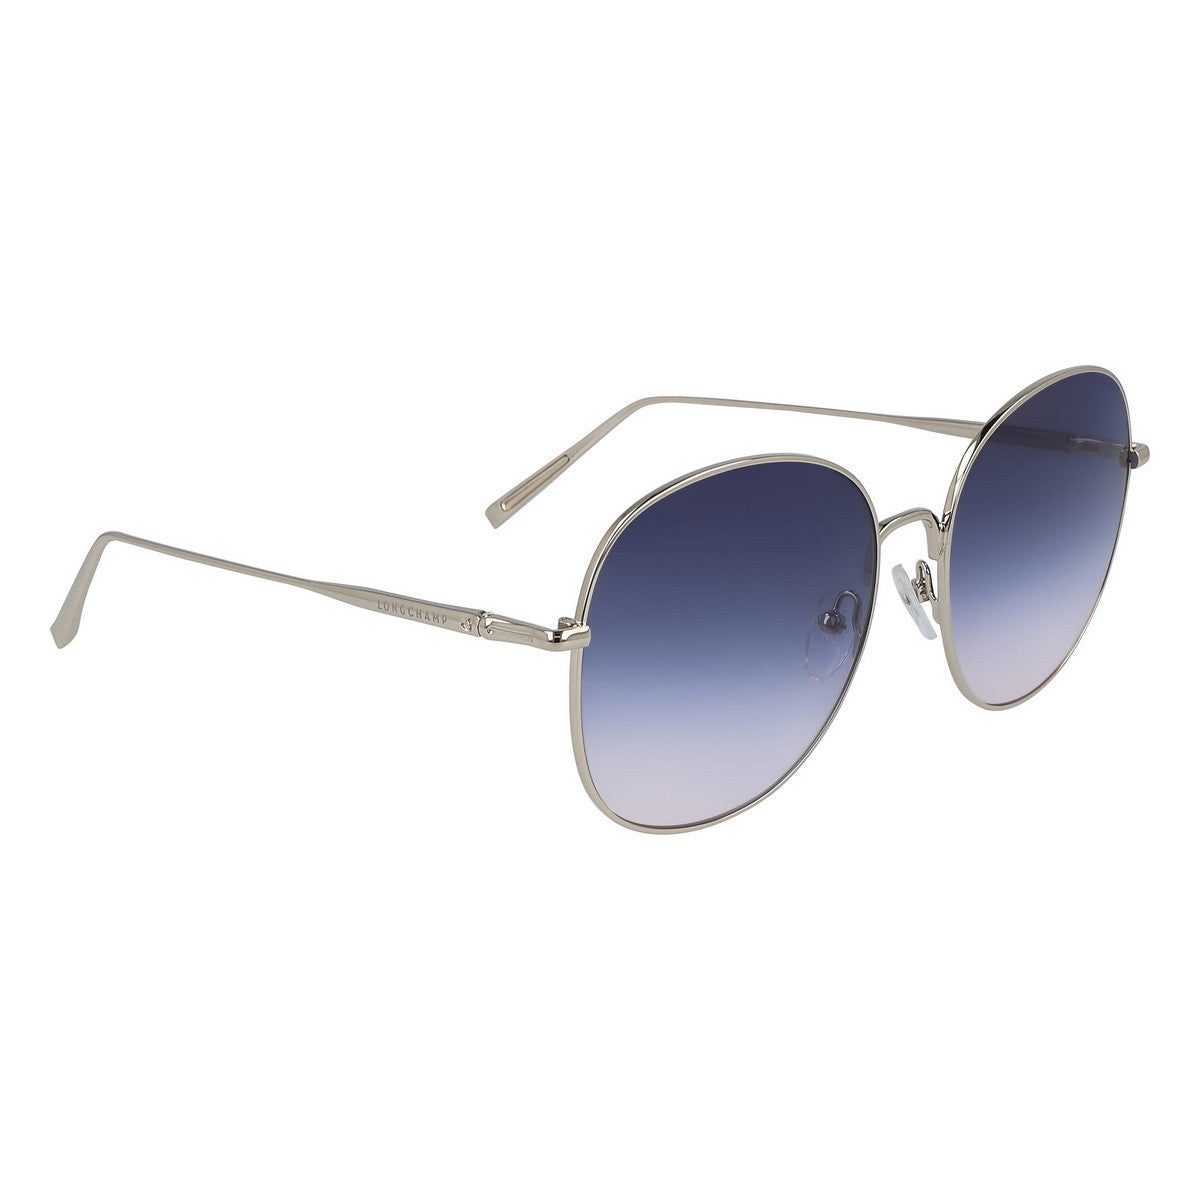 Kaufe Damensonnenbrille Longchamp LO118S-729 ø 59 mm bei AWK Flagship um € 71.00